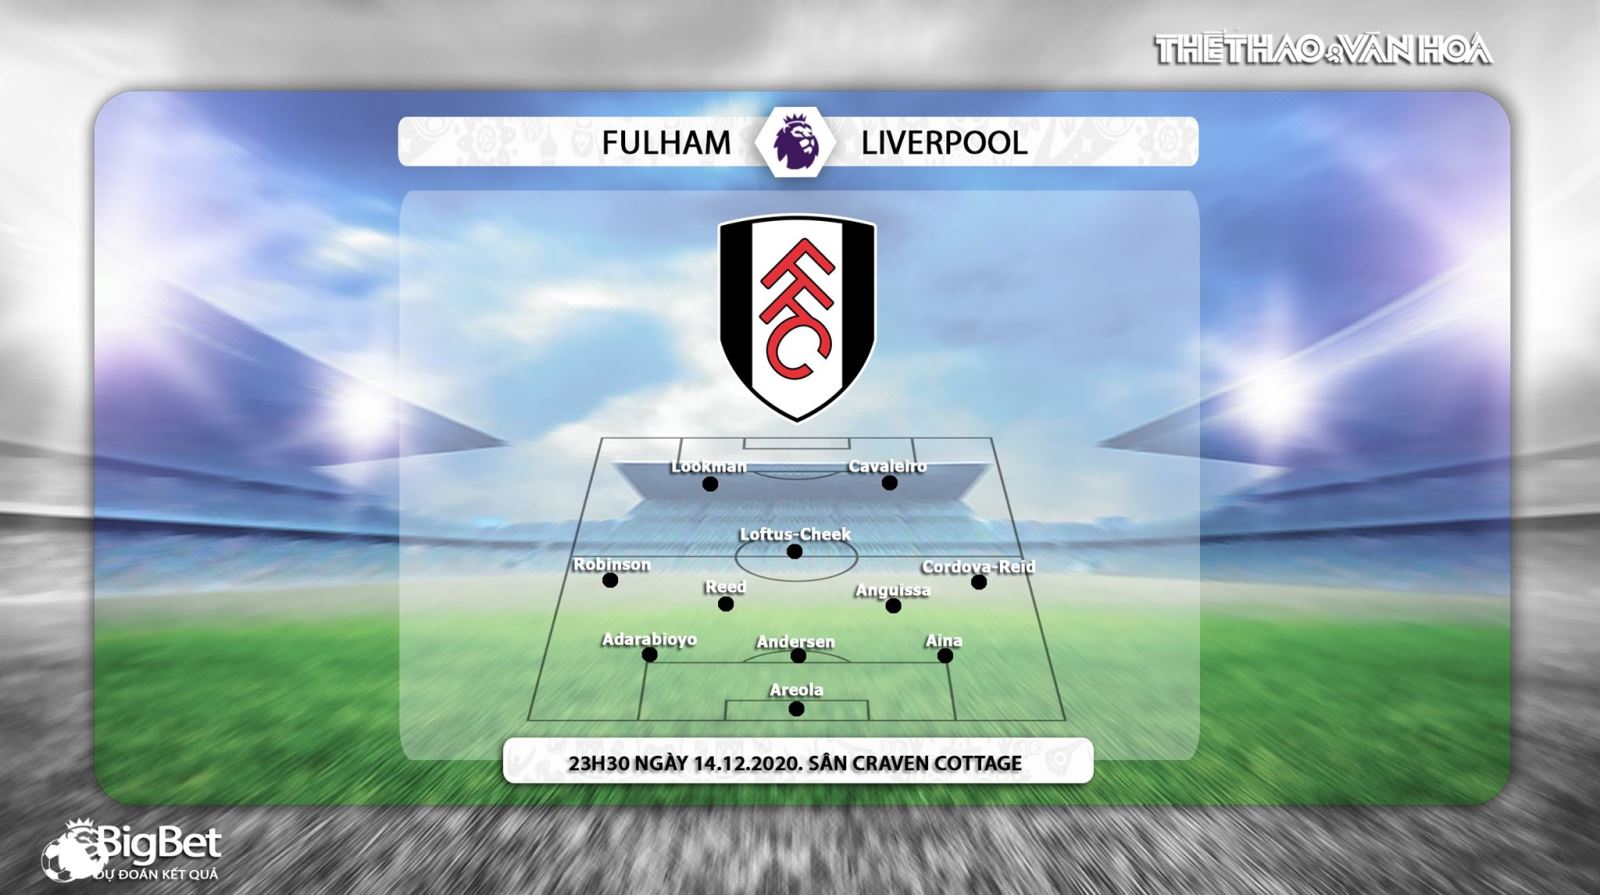 Keo nha cai, Kèo nhà cái, Fulham vs Liverpool, Trực tiếp bóng đá, K+PM, Ngoại hạng Anh vòng 12, soi kèo Liverpool đấu với Fulham, trực tiếp bóng đá Fulham vs Liverpool